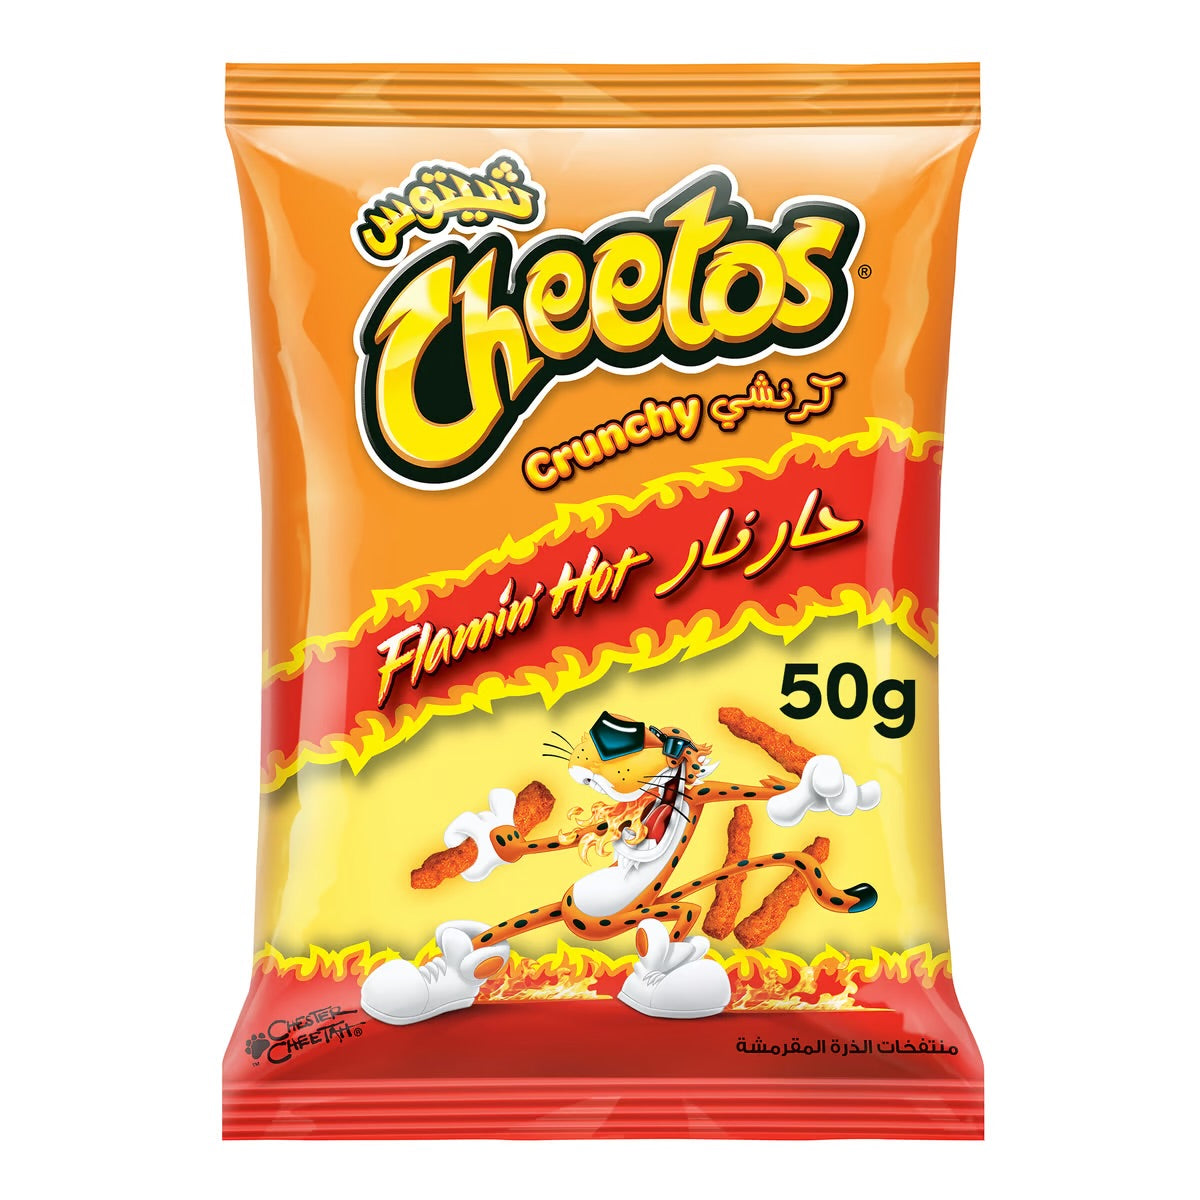 Cheetos flaming hot